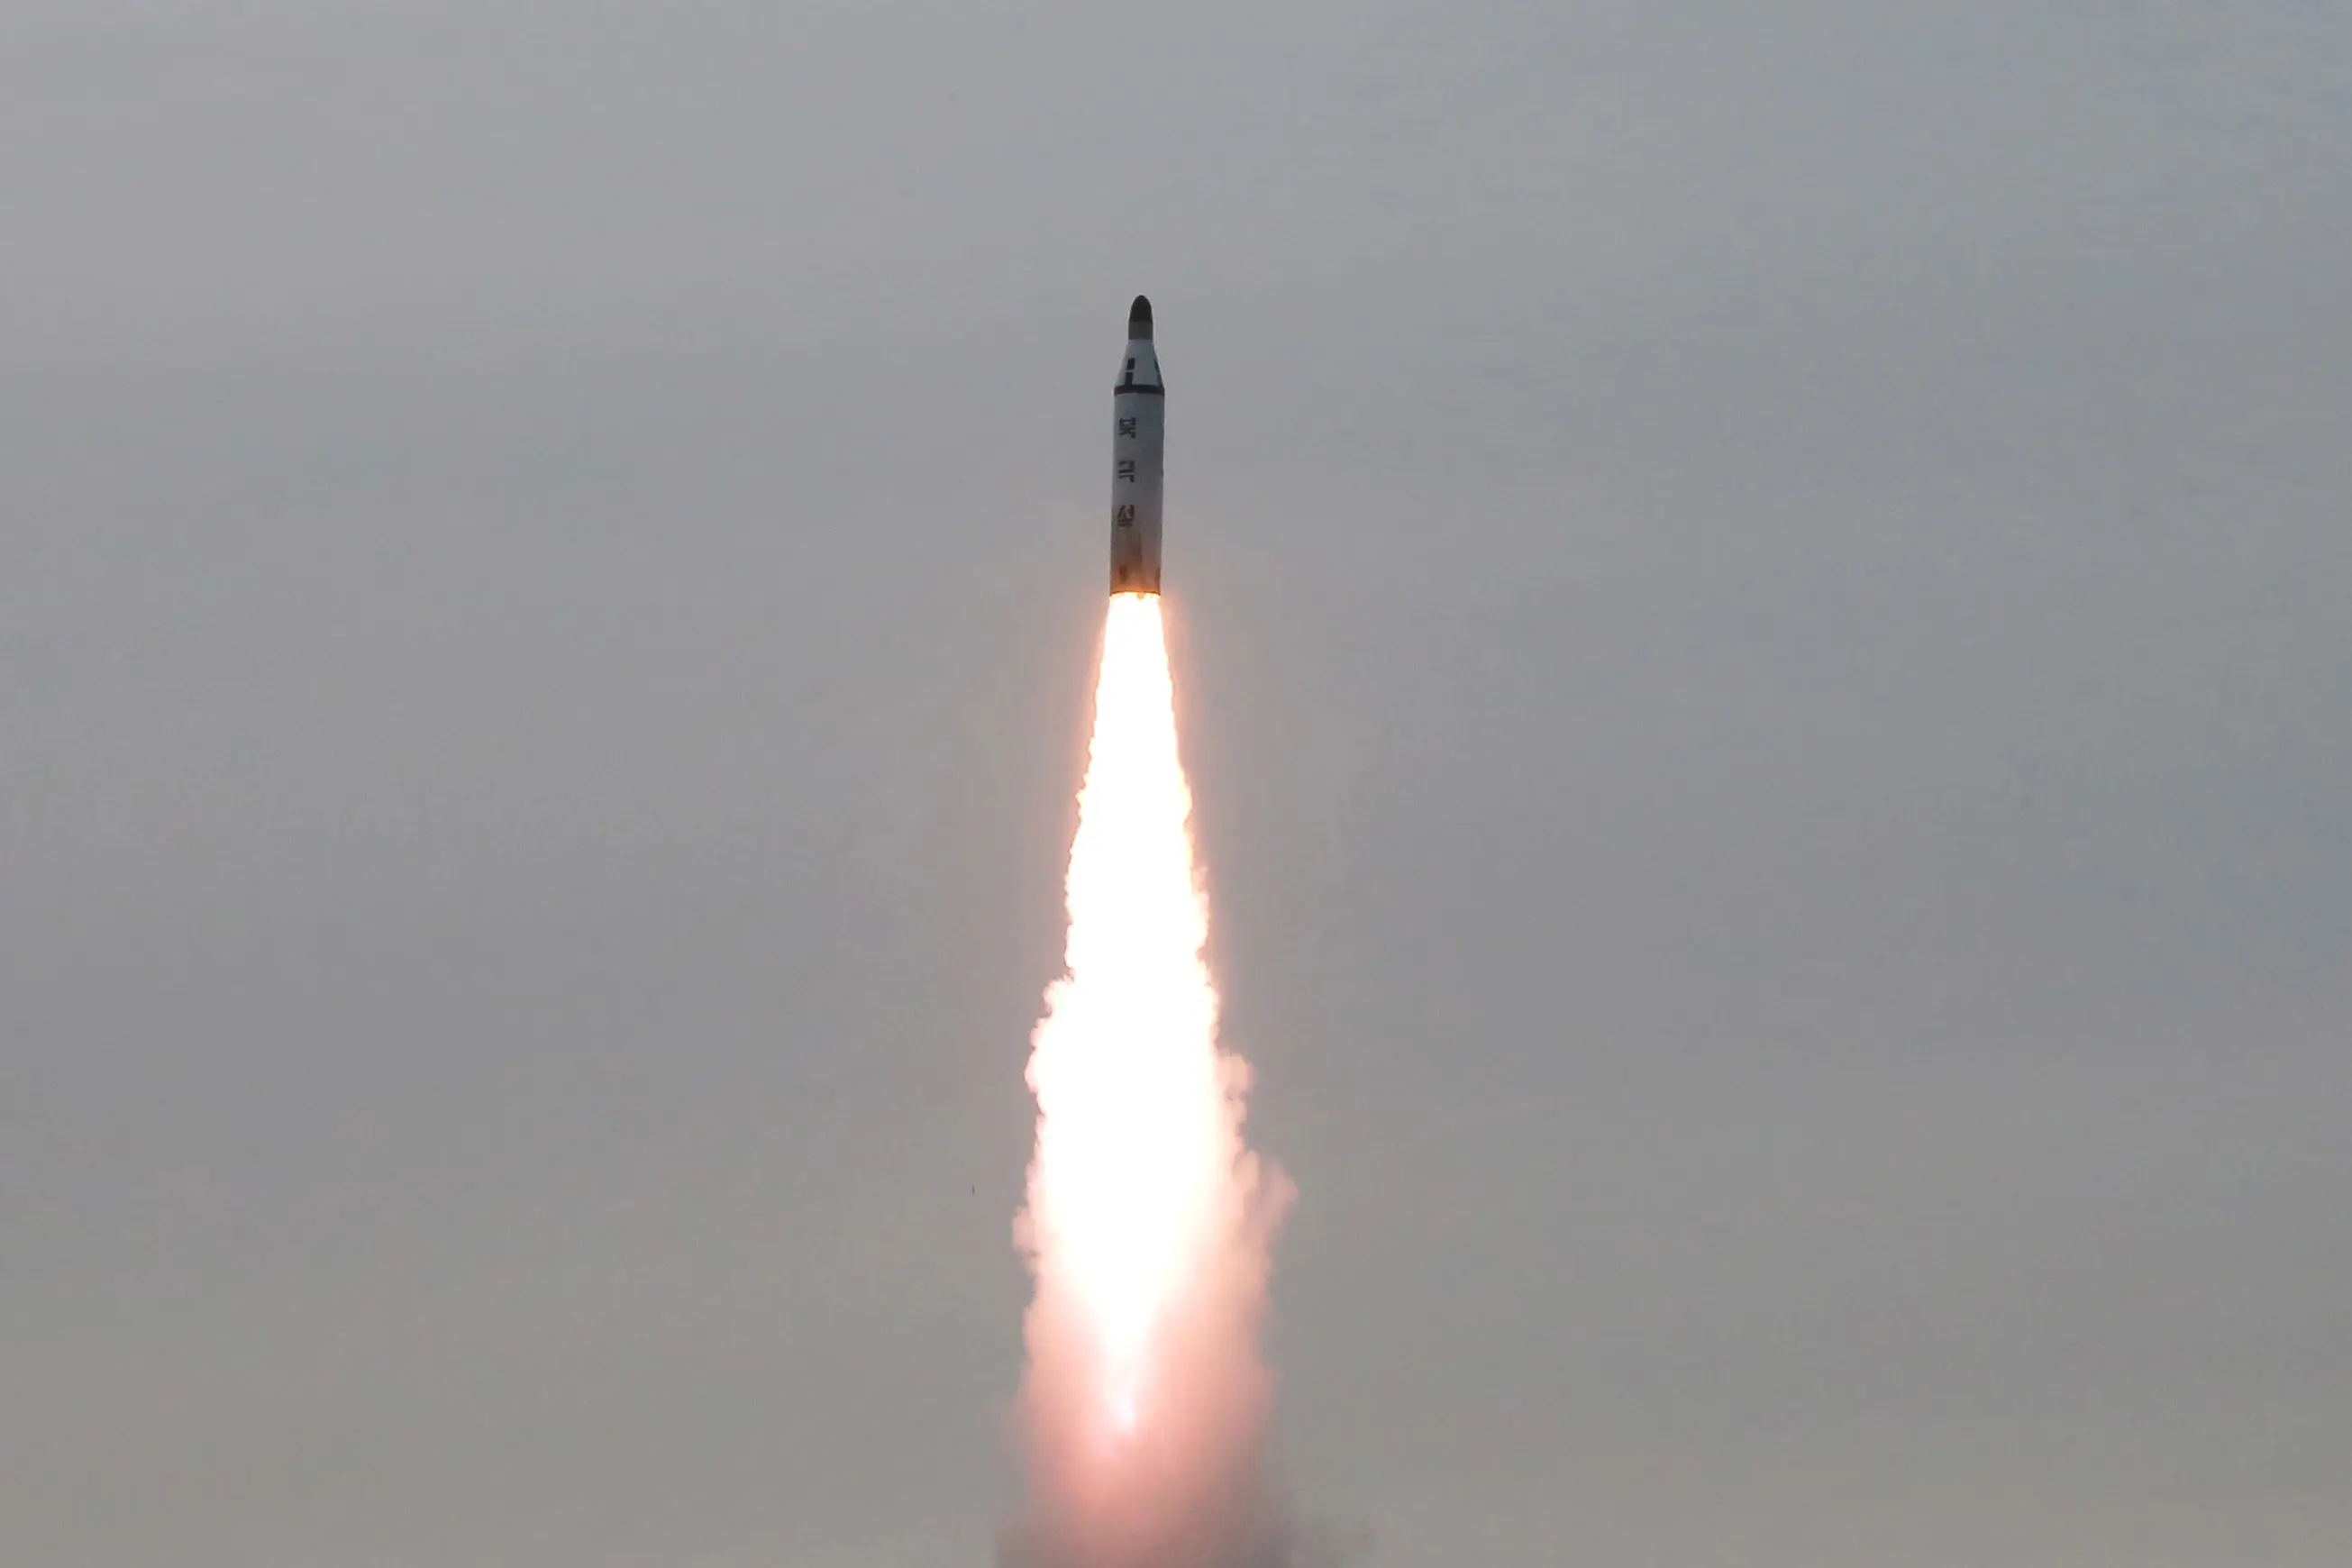 שיגור טיל מצוללת של קוריאה הצפונית, בחודש אפריל